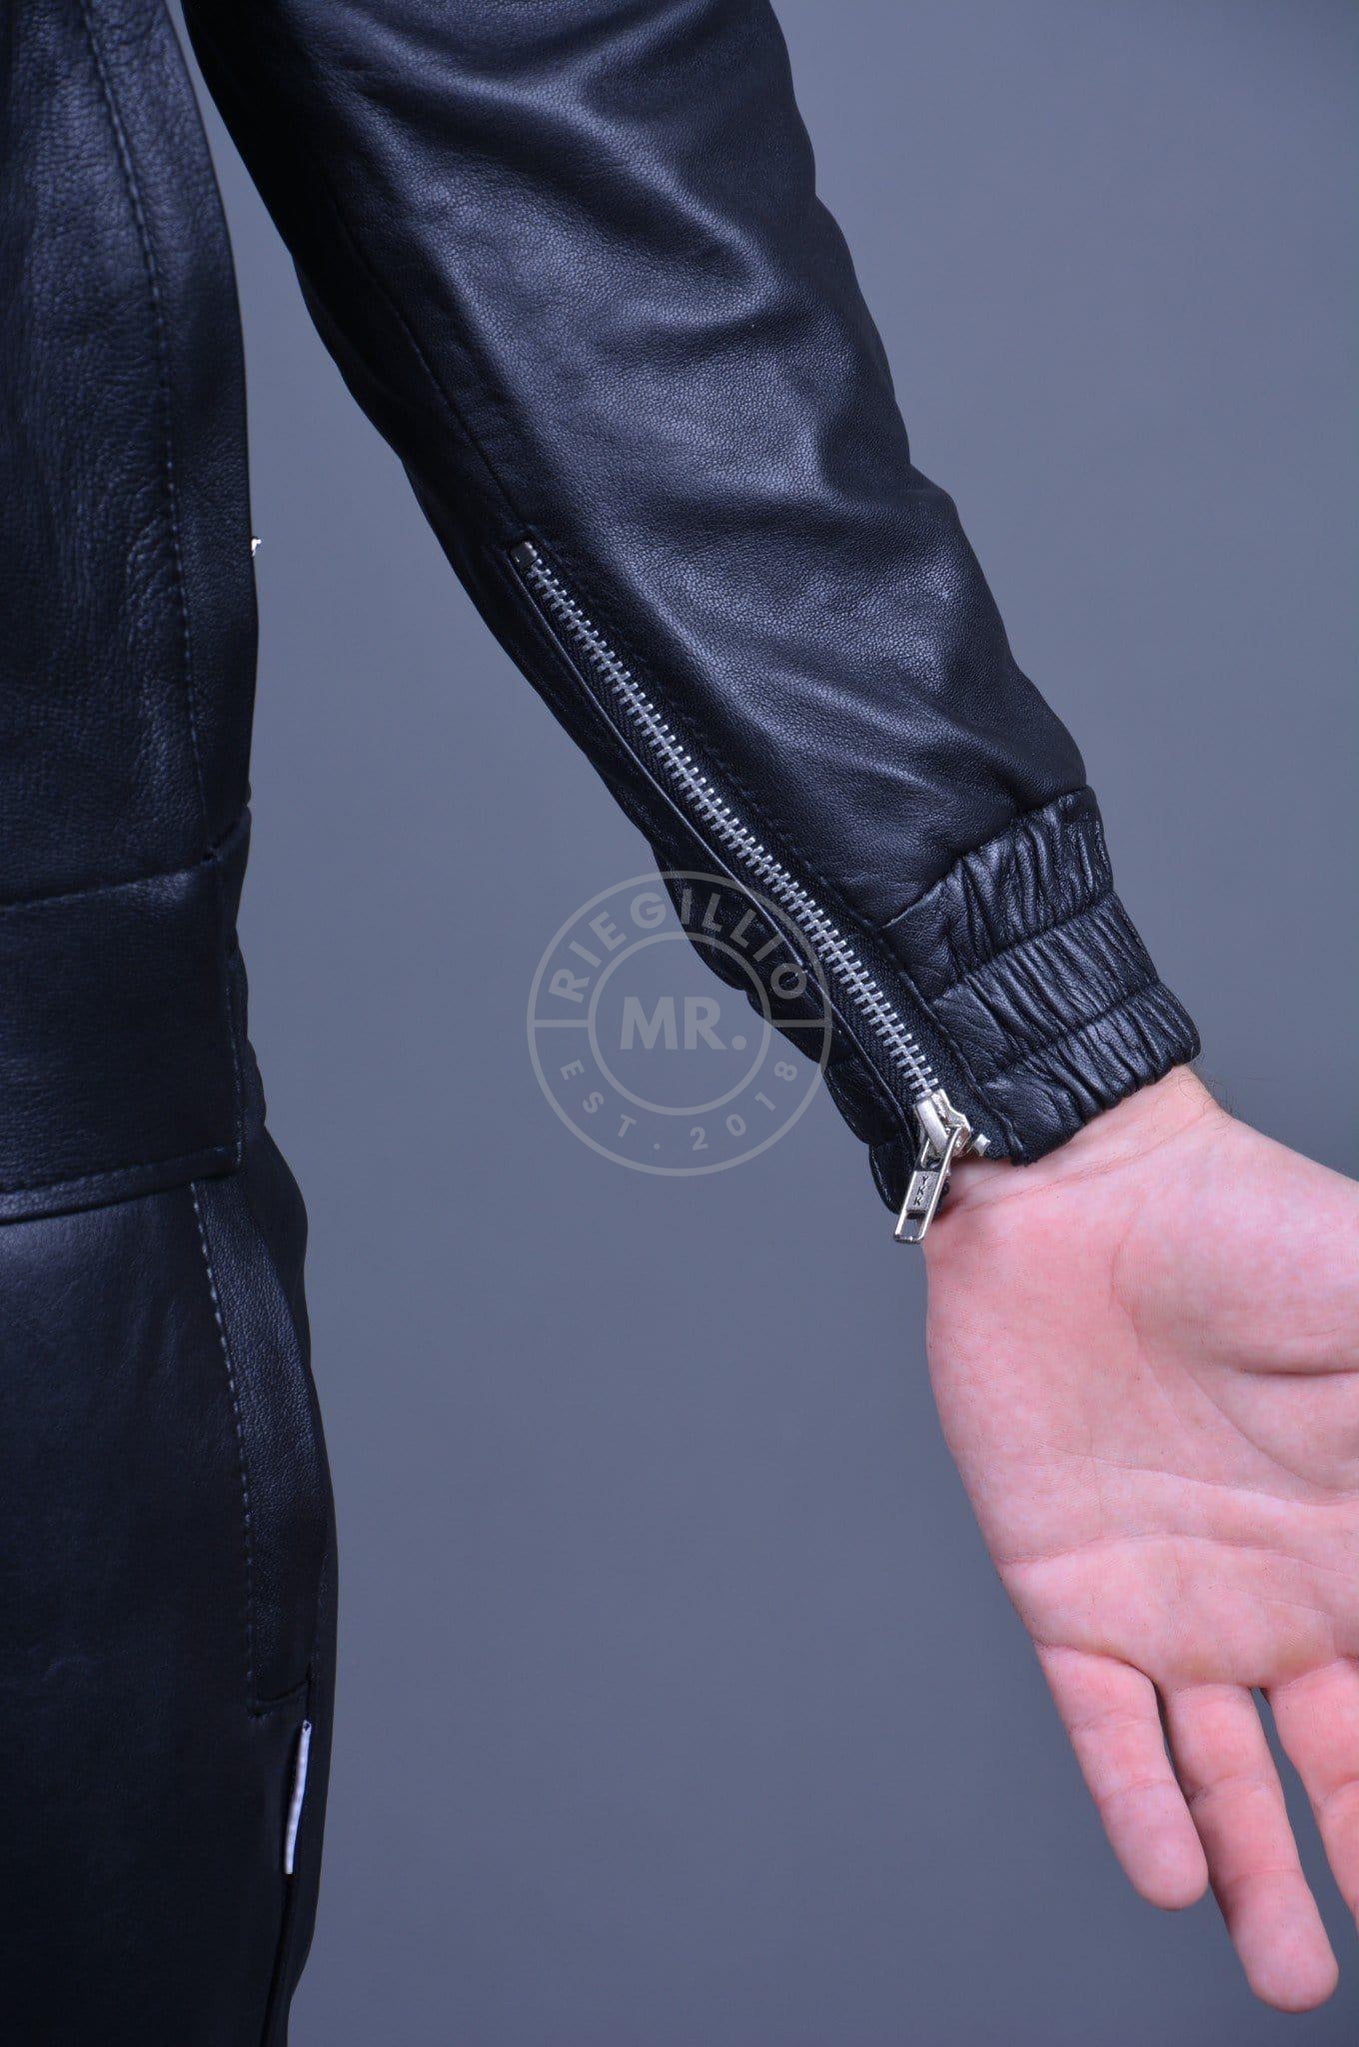 Plain Black Leather Tracksuit Jacket at MR. Riegillio